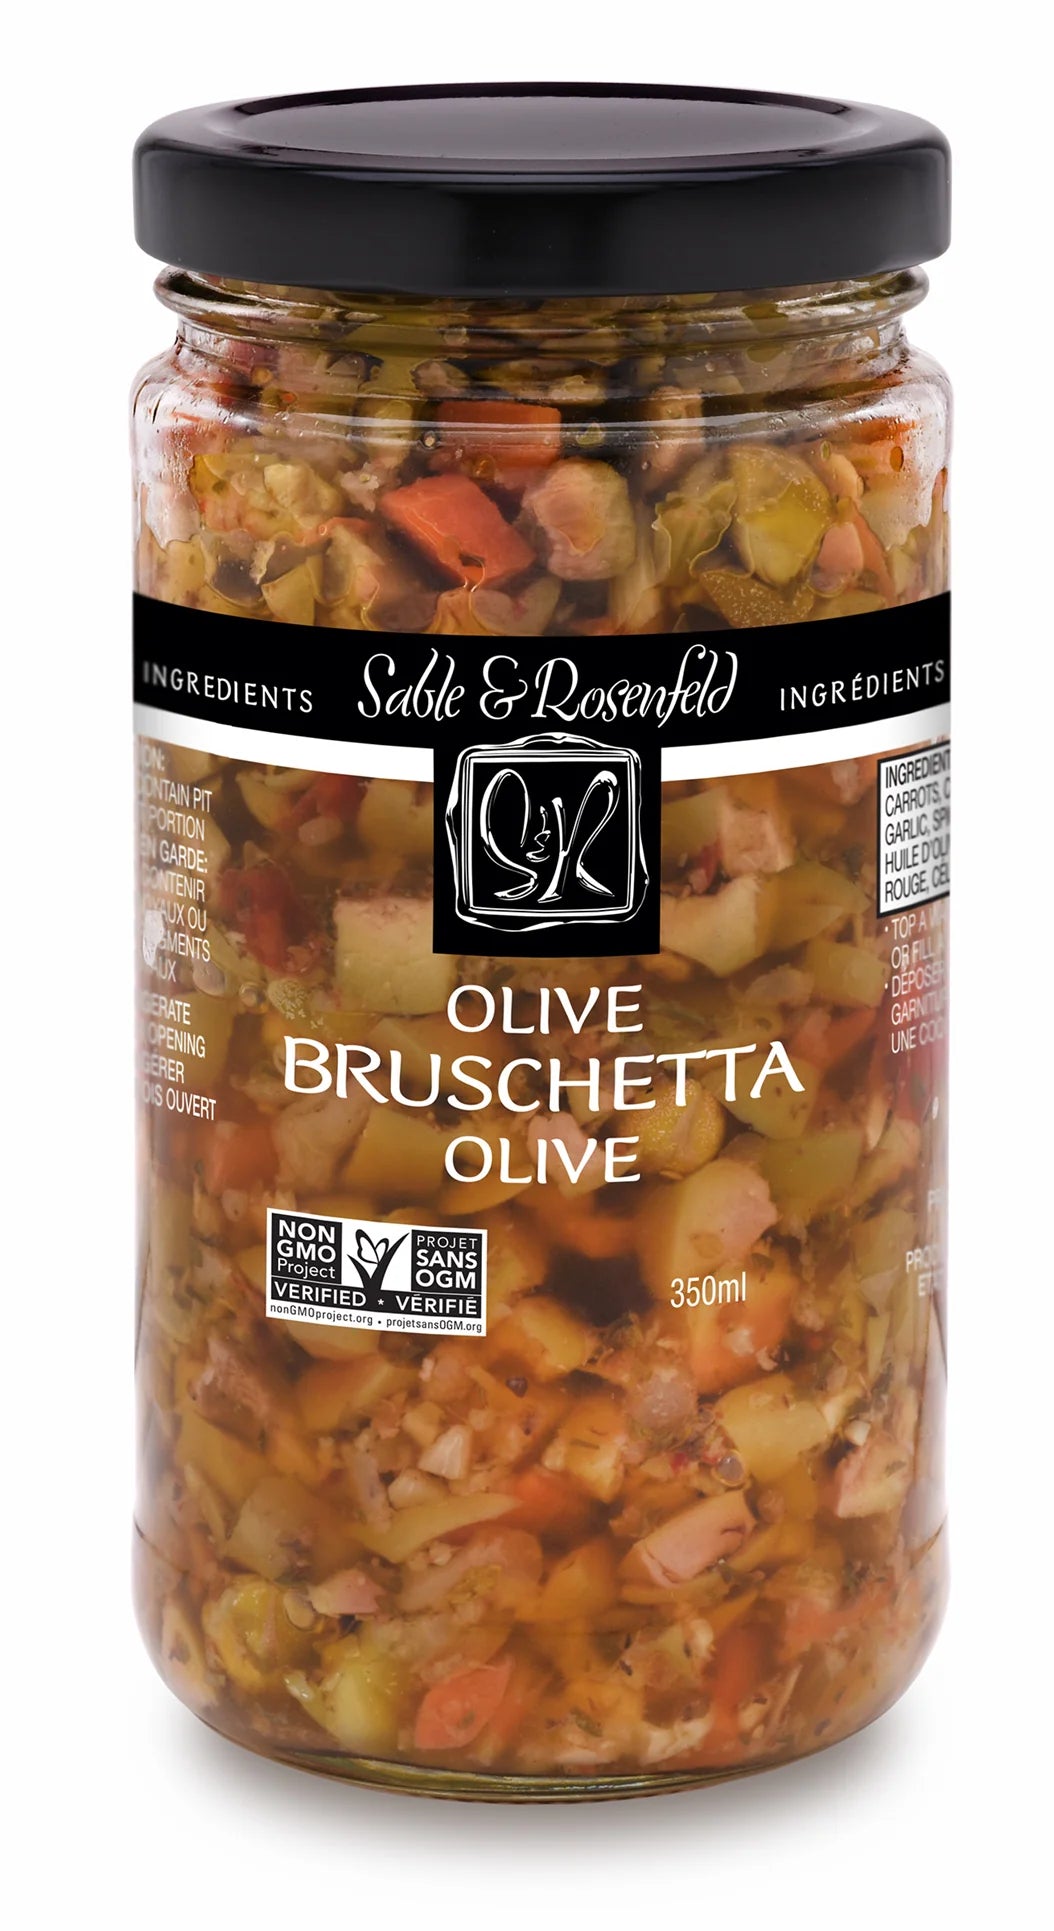 Bruschetta aux olives